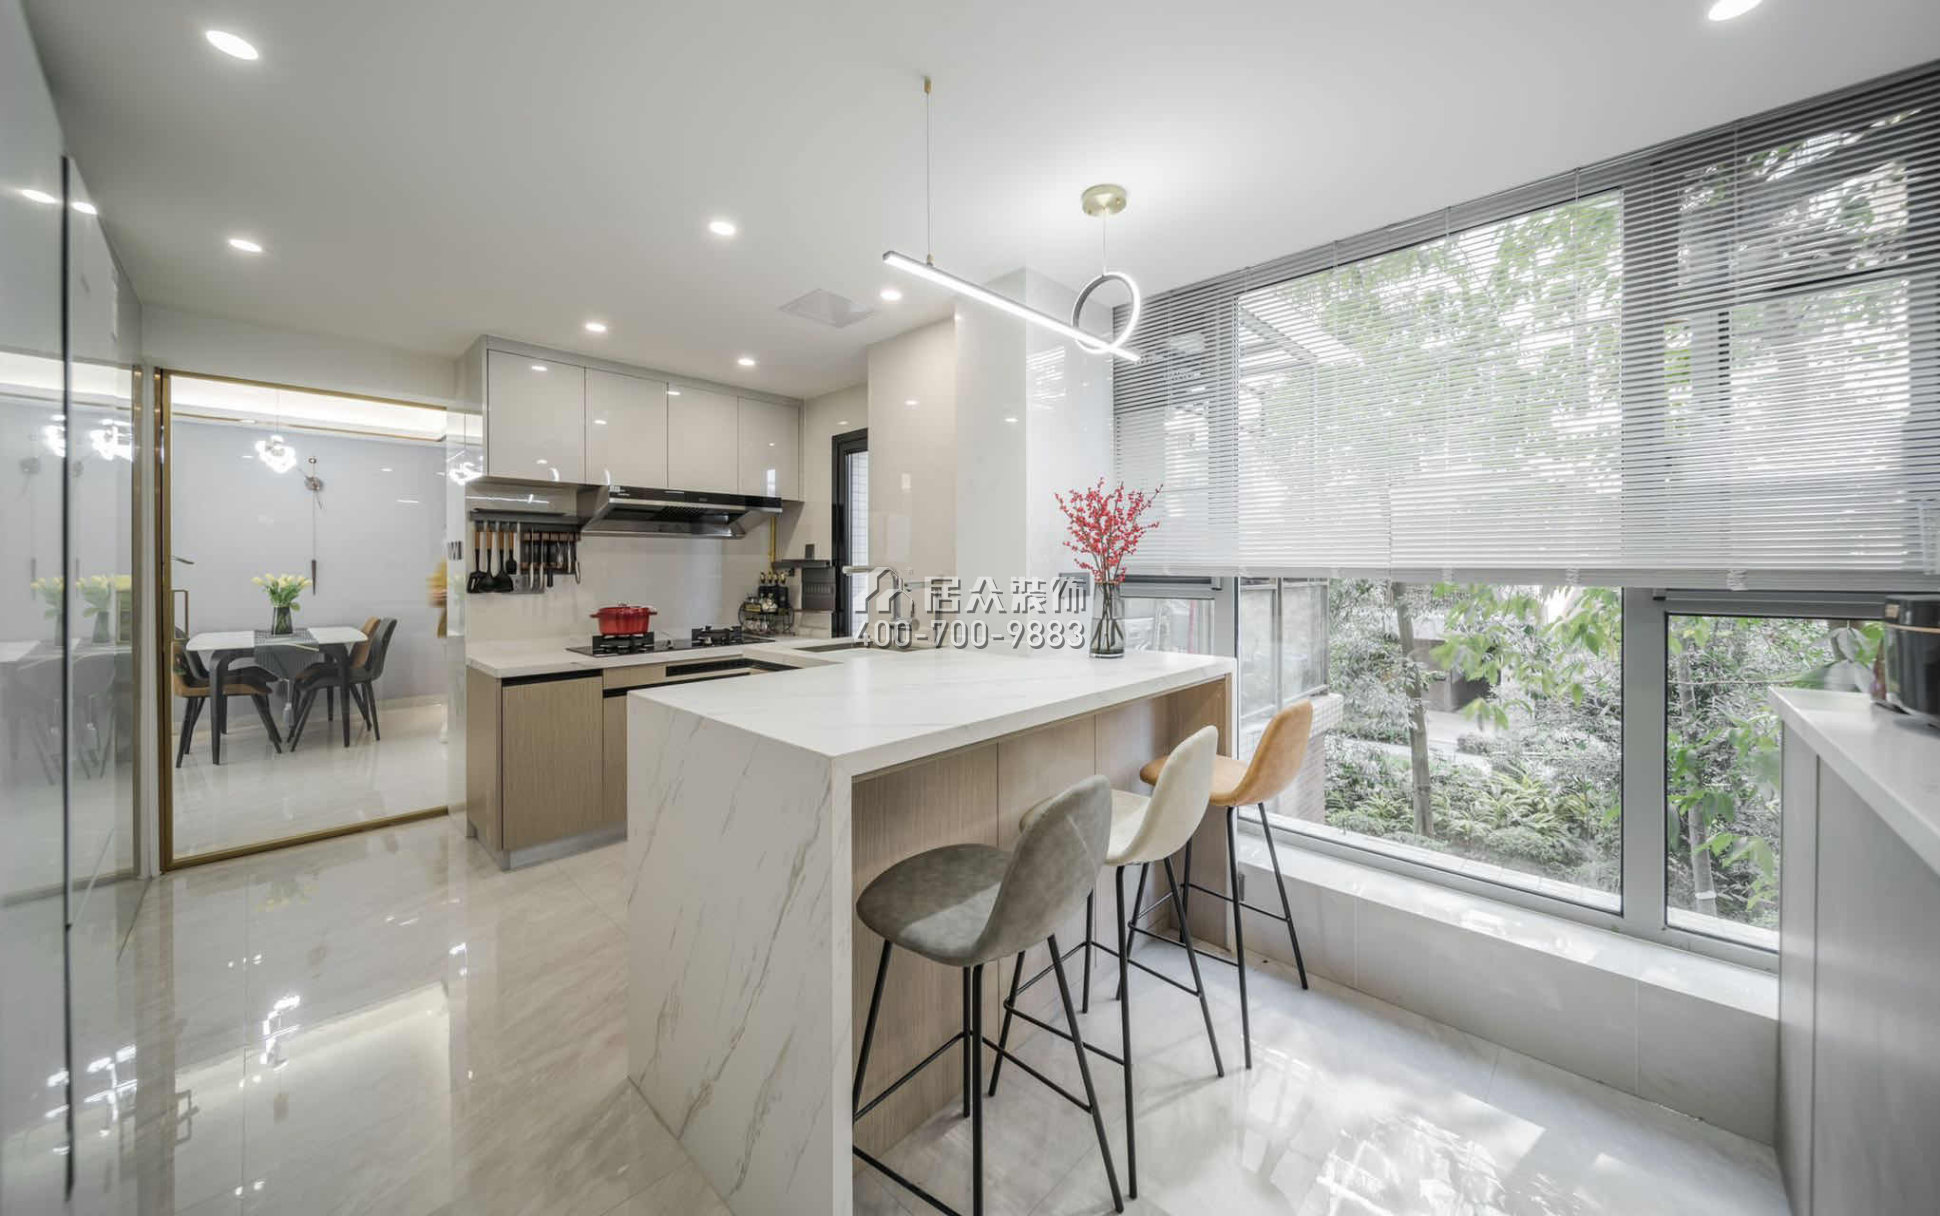 碧水龍庭130平方米現代簡約風格平層戶型廚房裝修效果圖